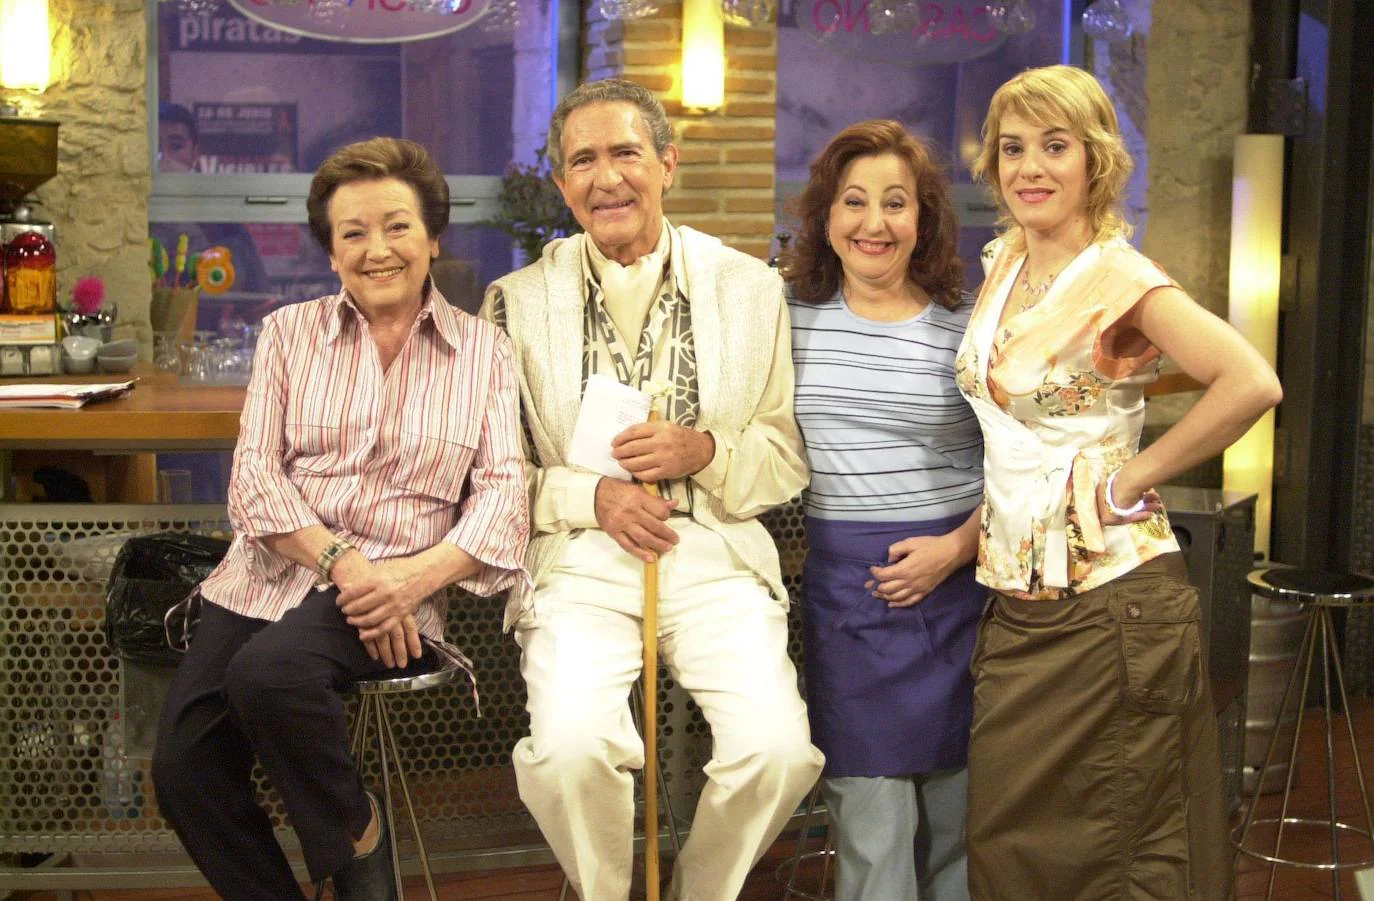 Gala hizo un cameo en la popular serie '7 vidas', en el 2003. En la imagen posa con las actrices Amparo Baró, Carmen Machi y Anabel Alonso.